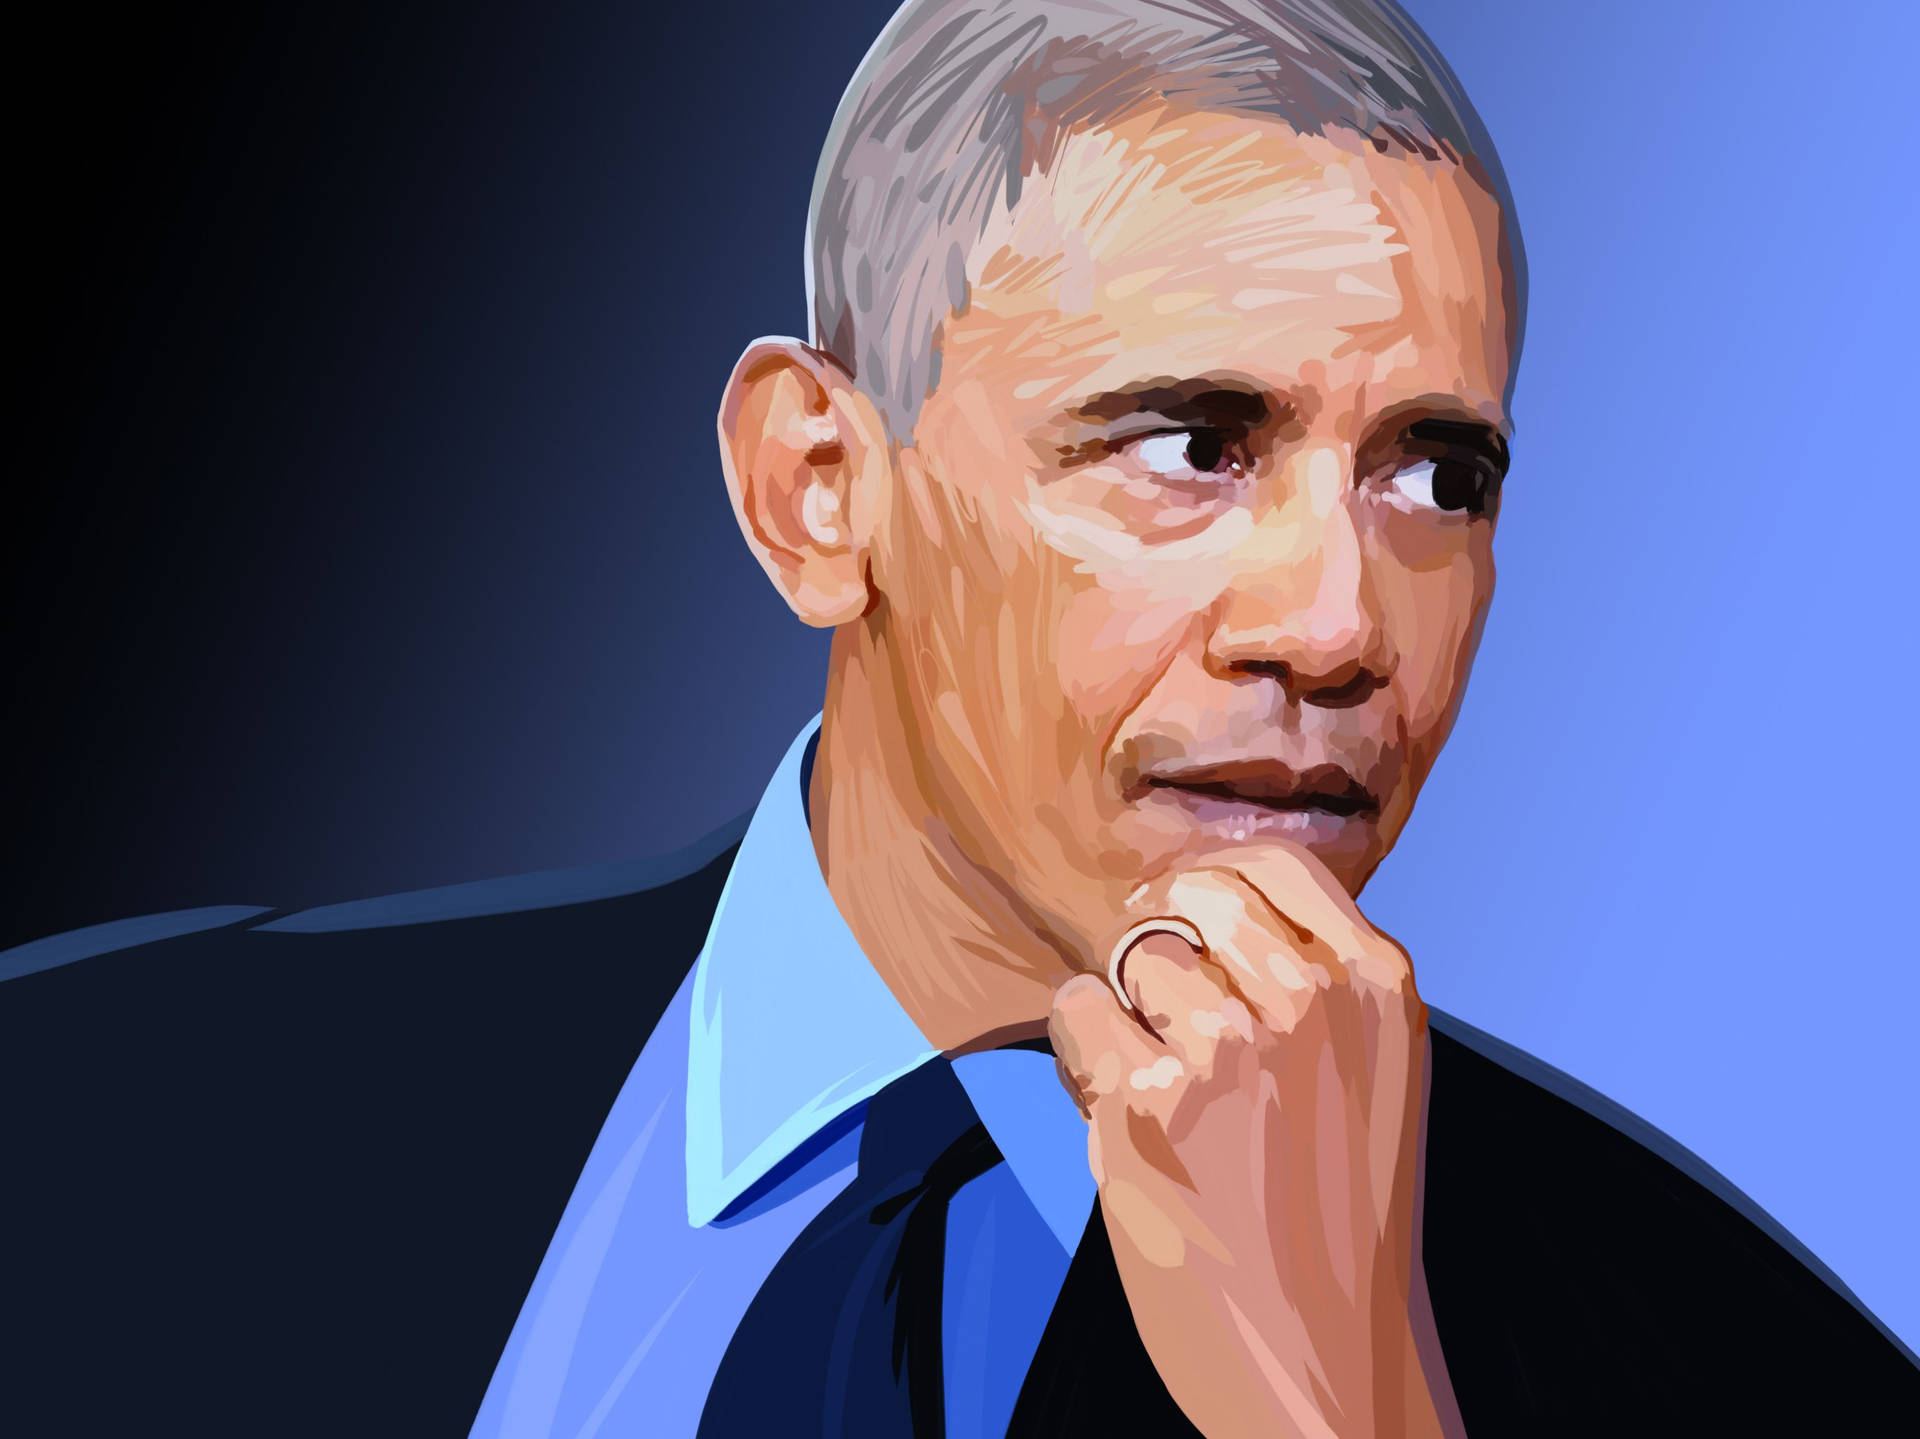 Barack Obama Background Photos